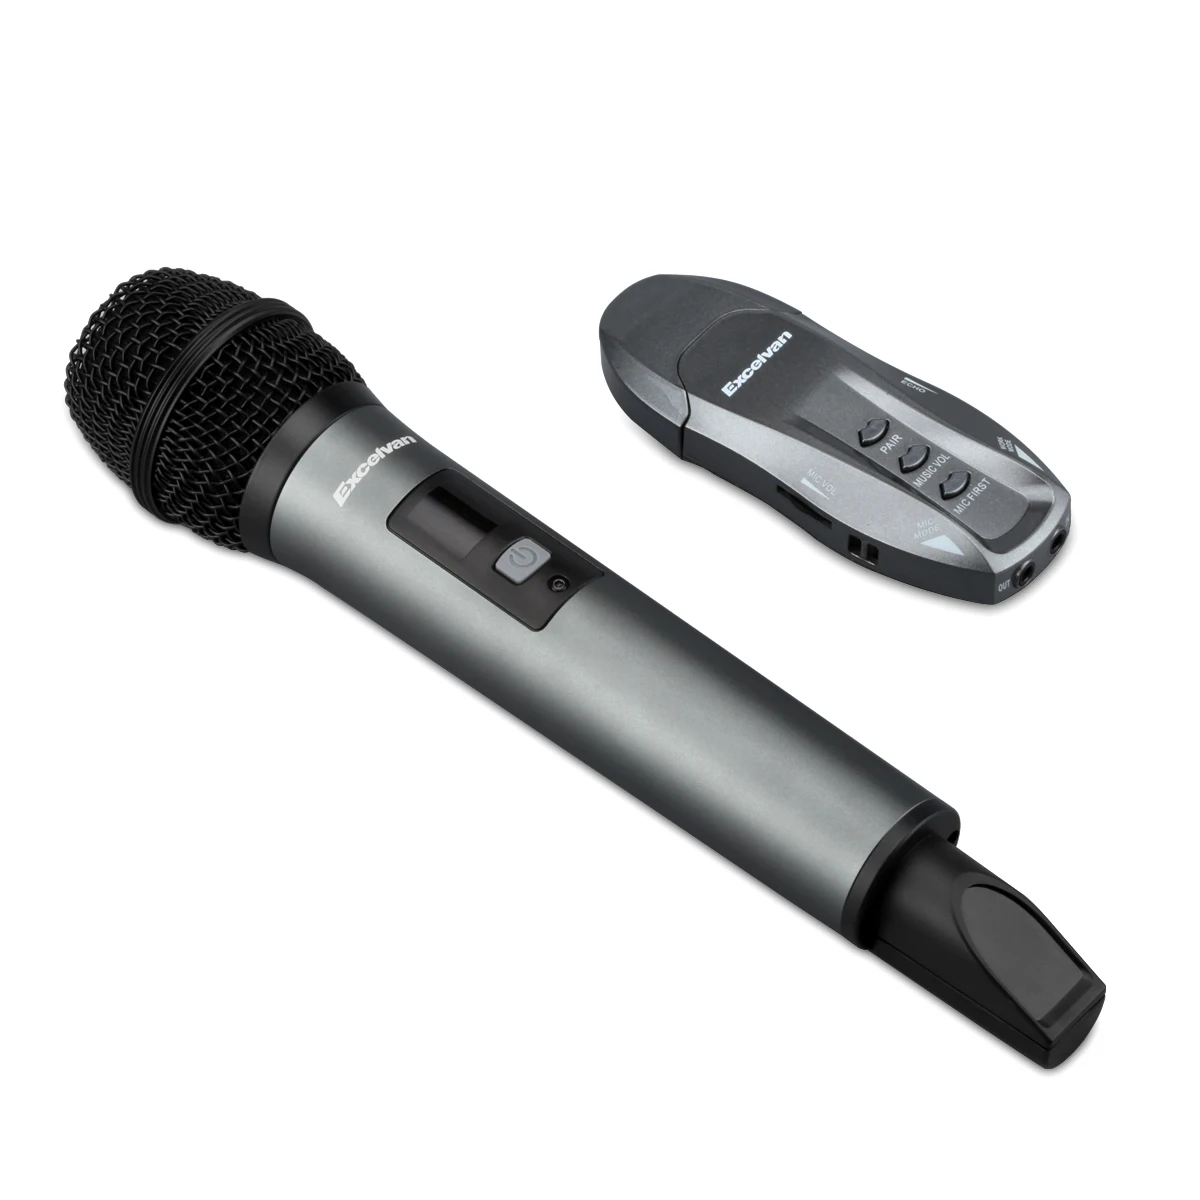 Беспроводной блютуз микрофон для телефона. Микрофон BT k200980. Excelvan микрофон. Wireless Microphone k18. Блютуз микрофон петличка.